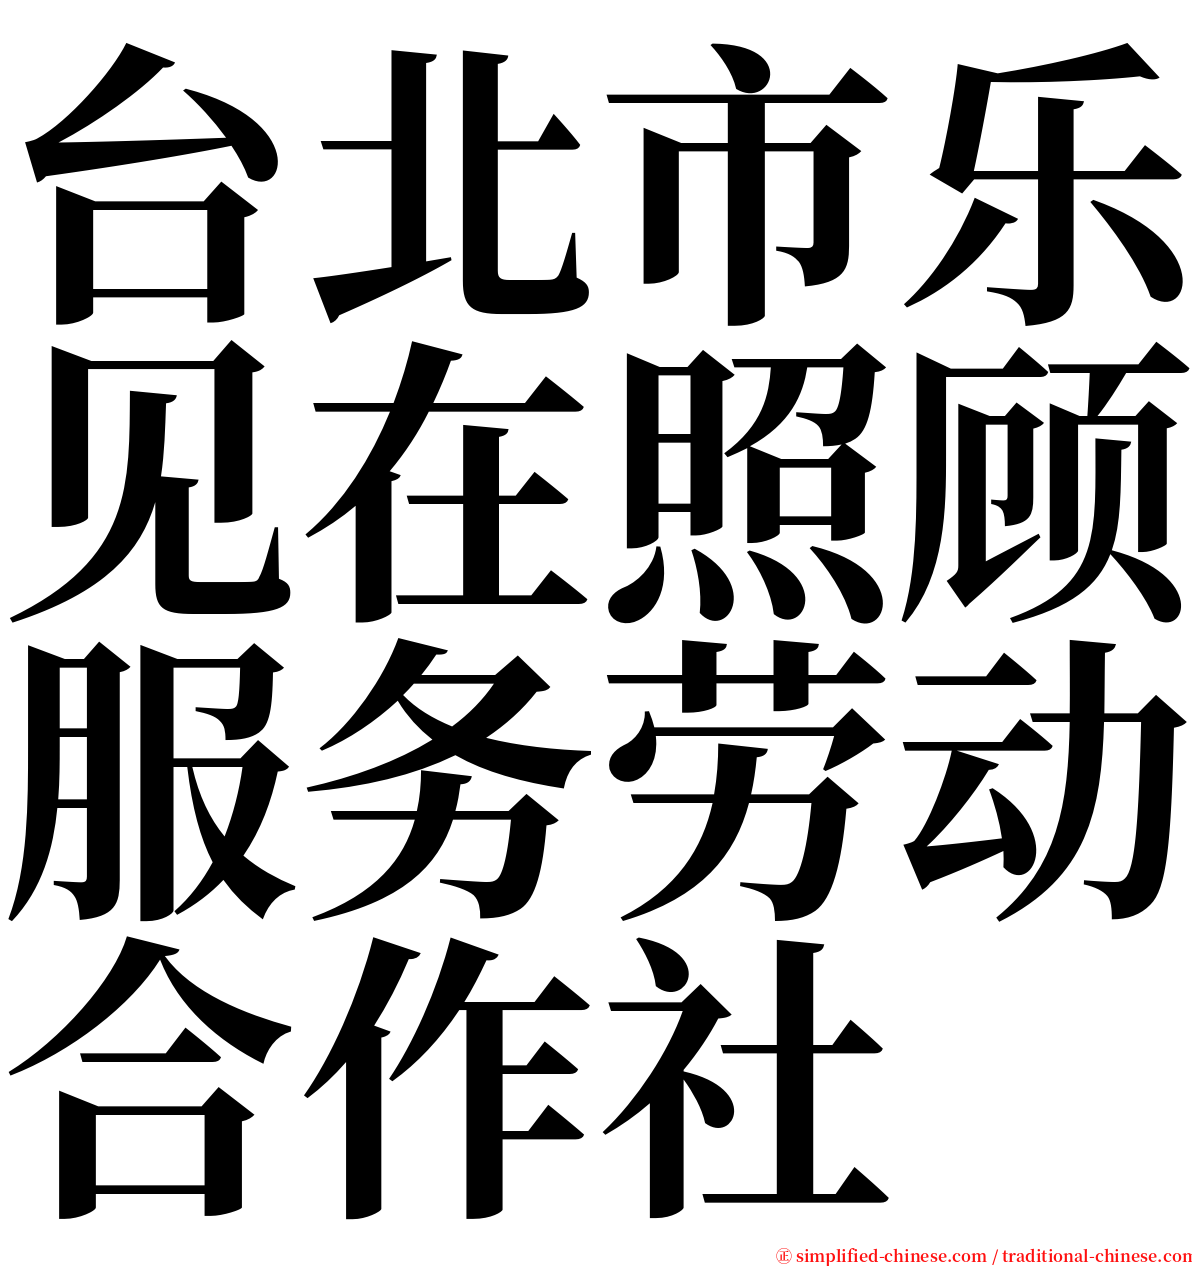 台北市乐见在照顾服务劳动合作社 serif font